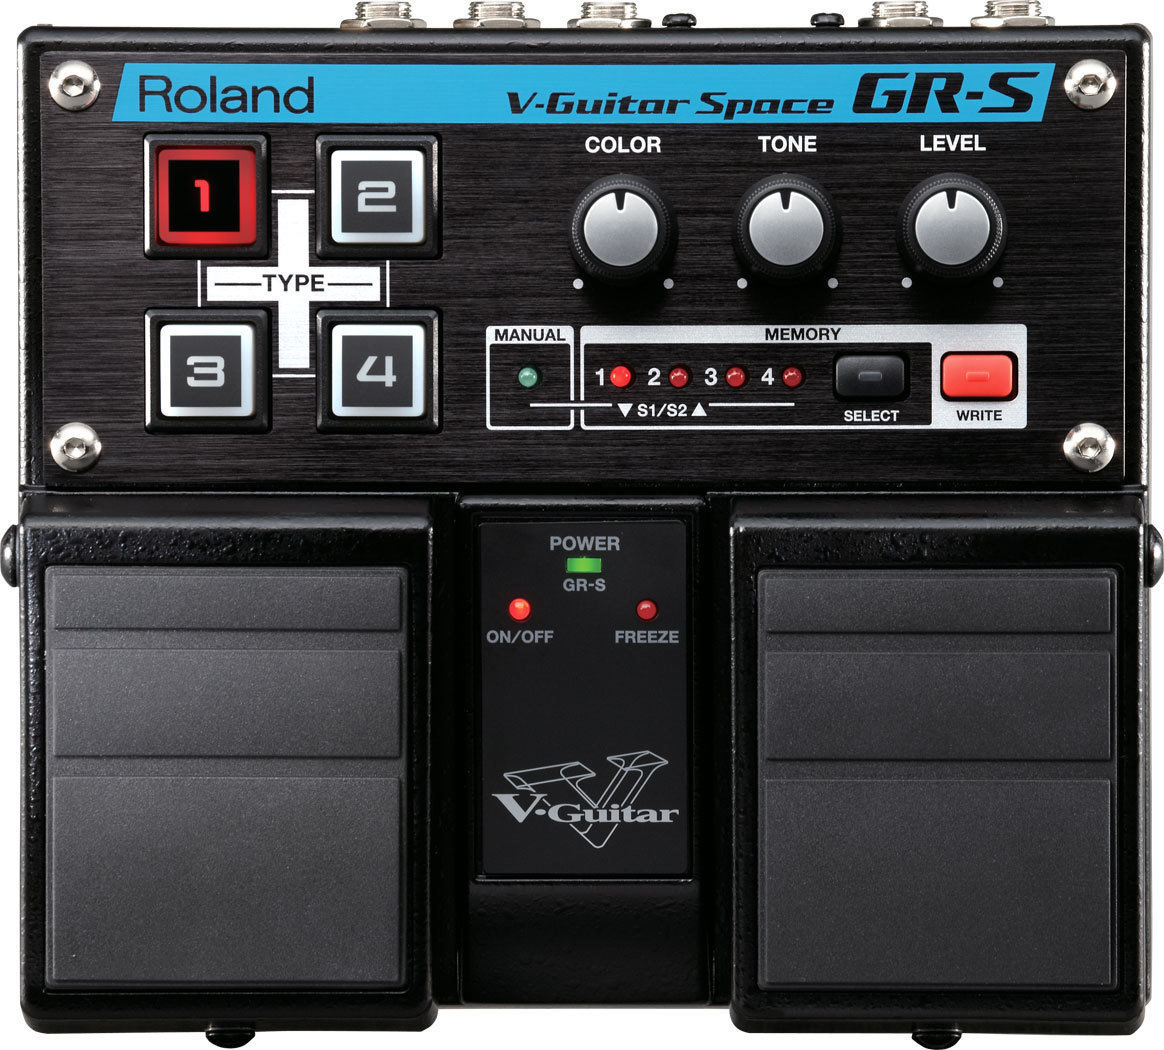 Guitar Effect Roland GR S V-Guitar Space